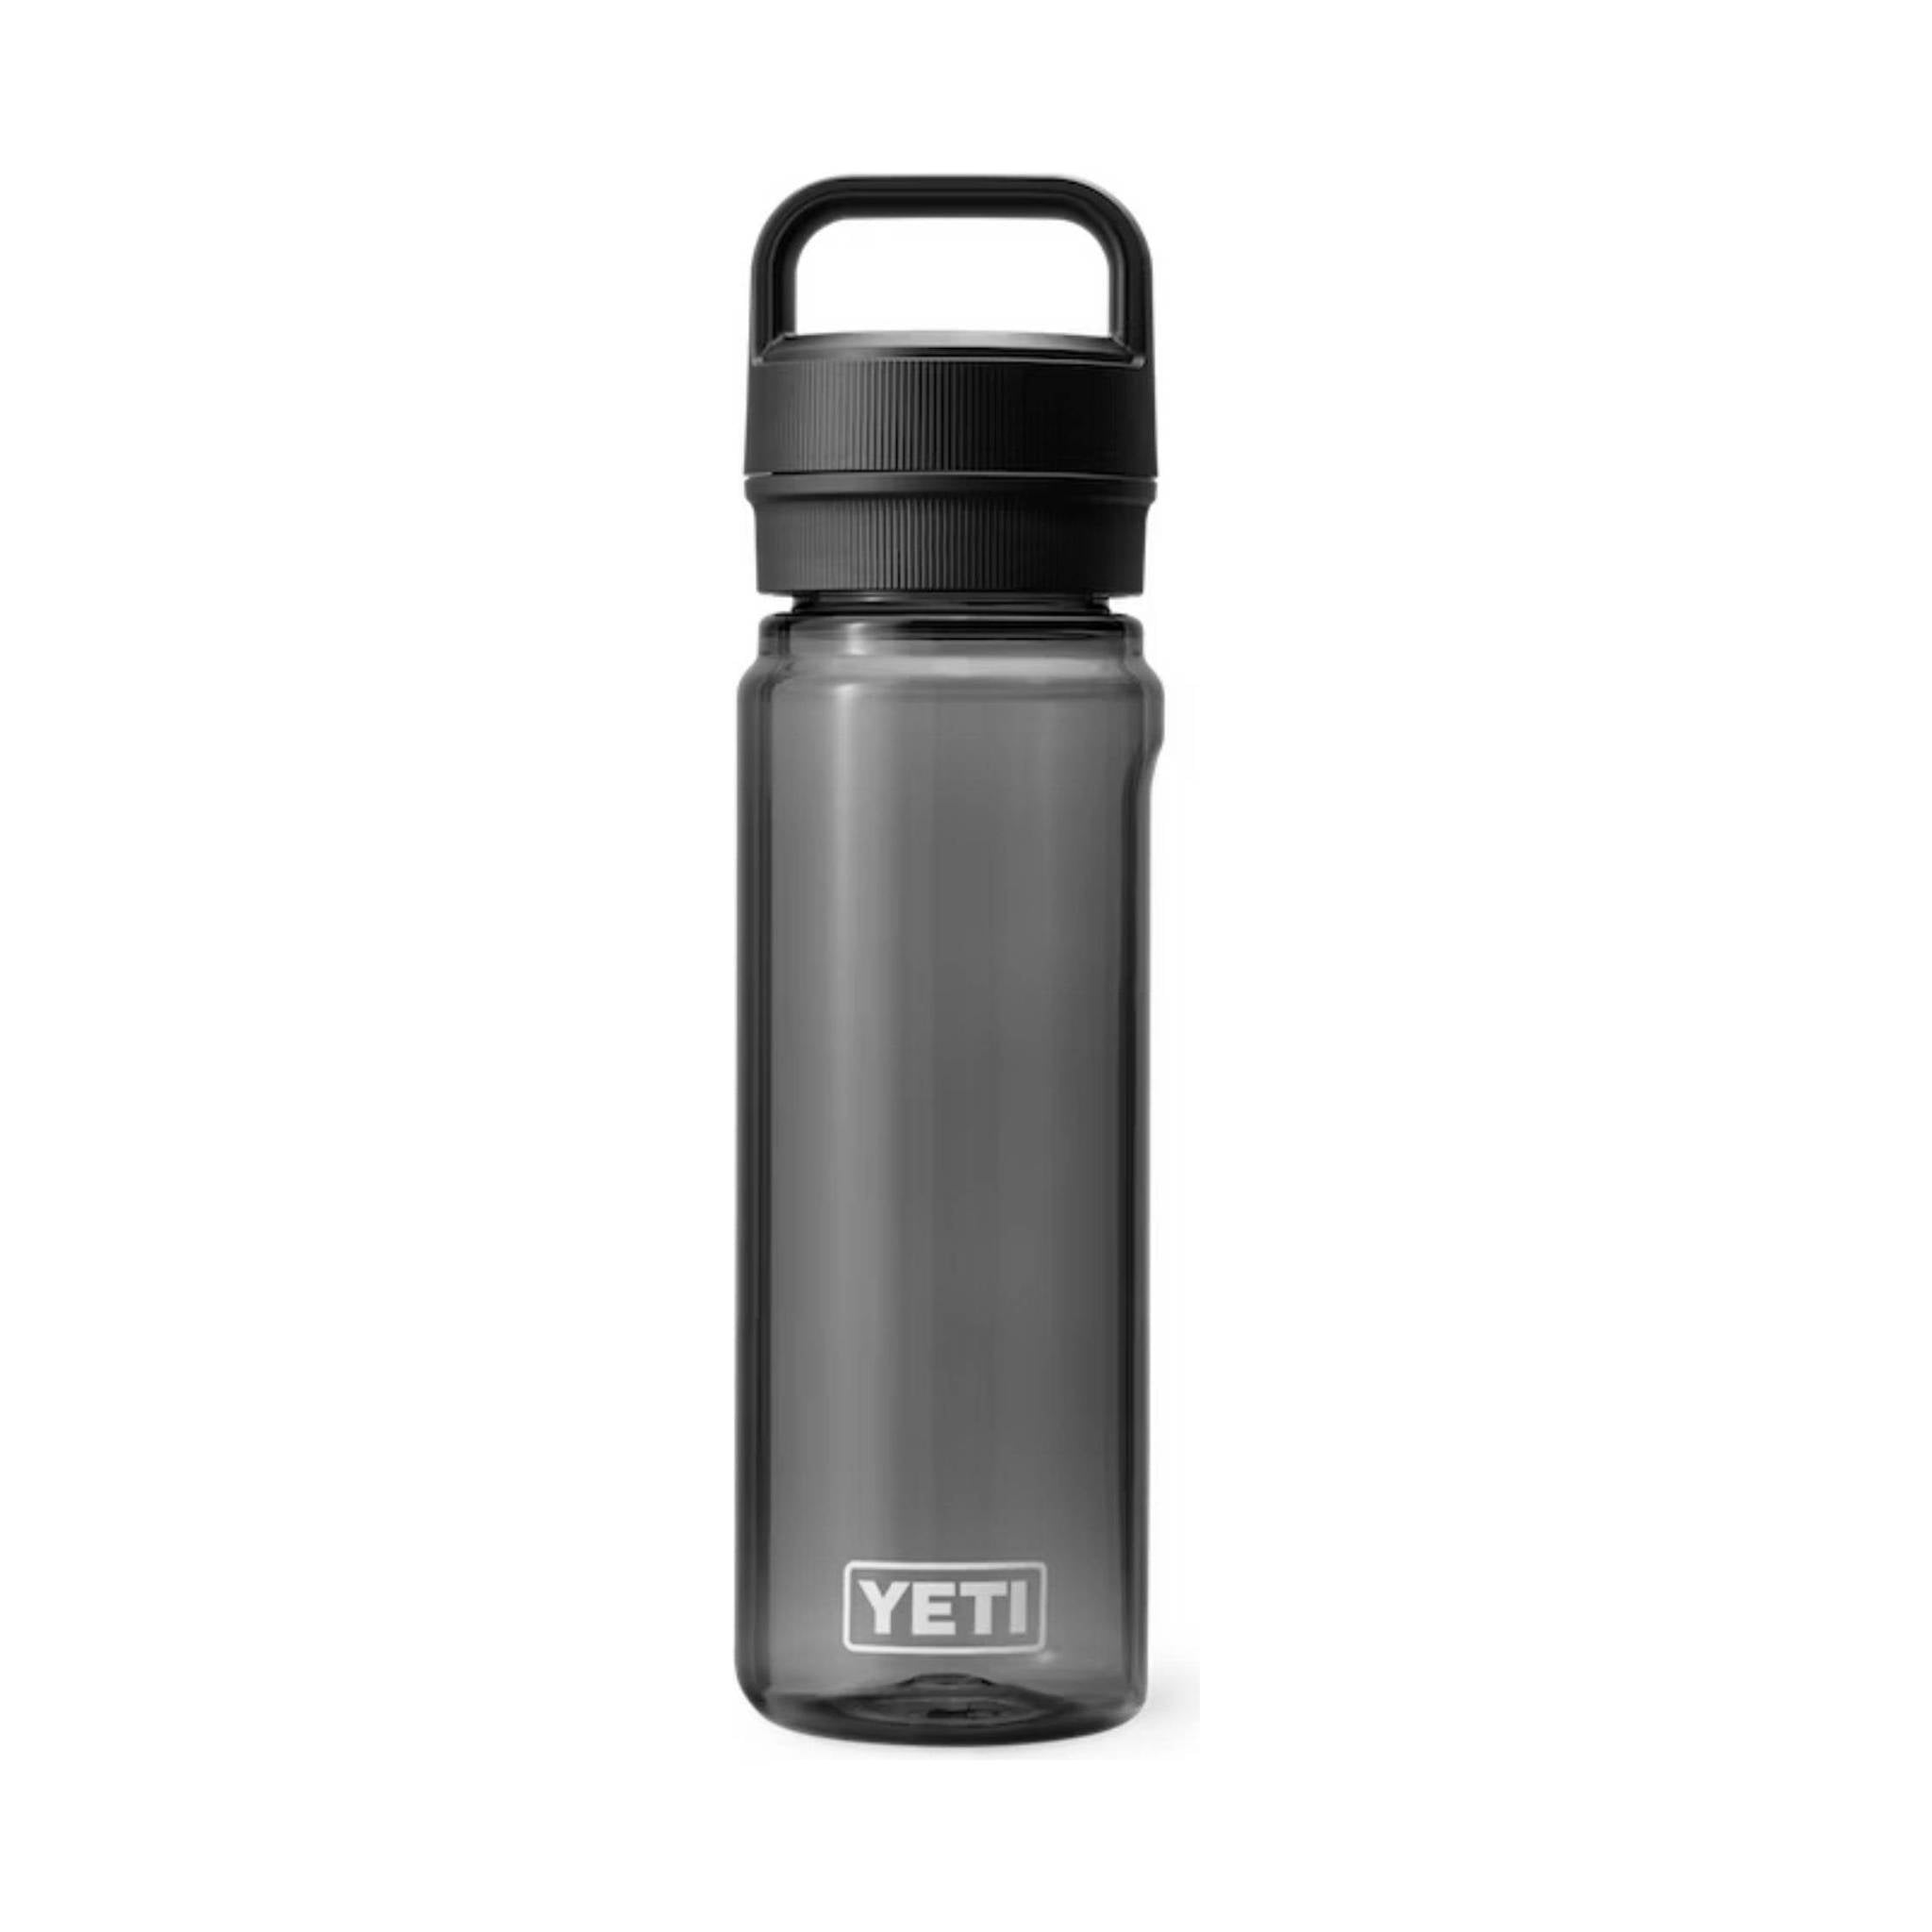 Yeti Water Bottle Lid, Ceramic Water Bottle